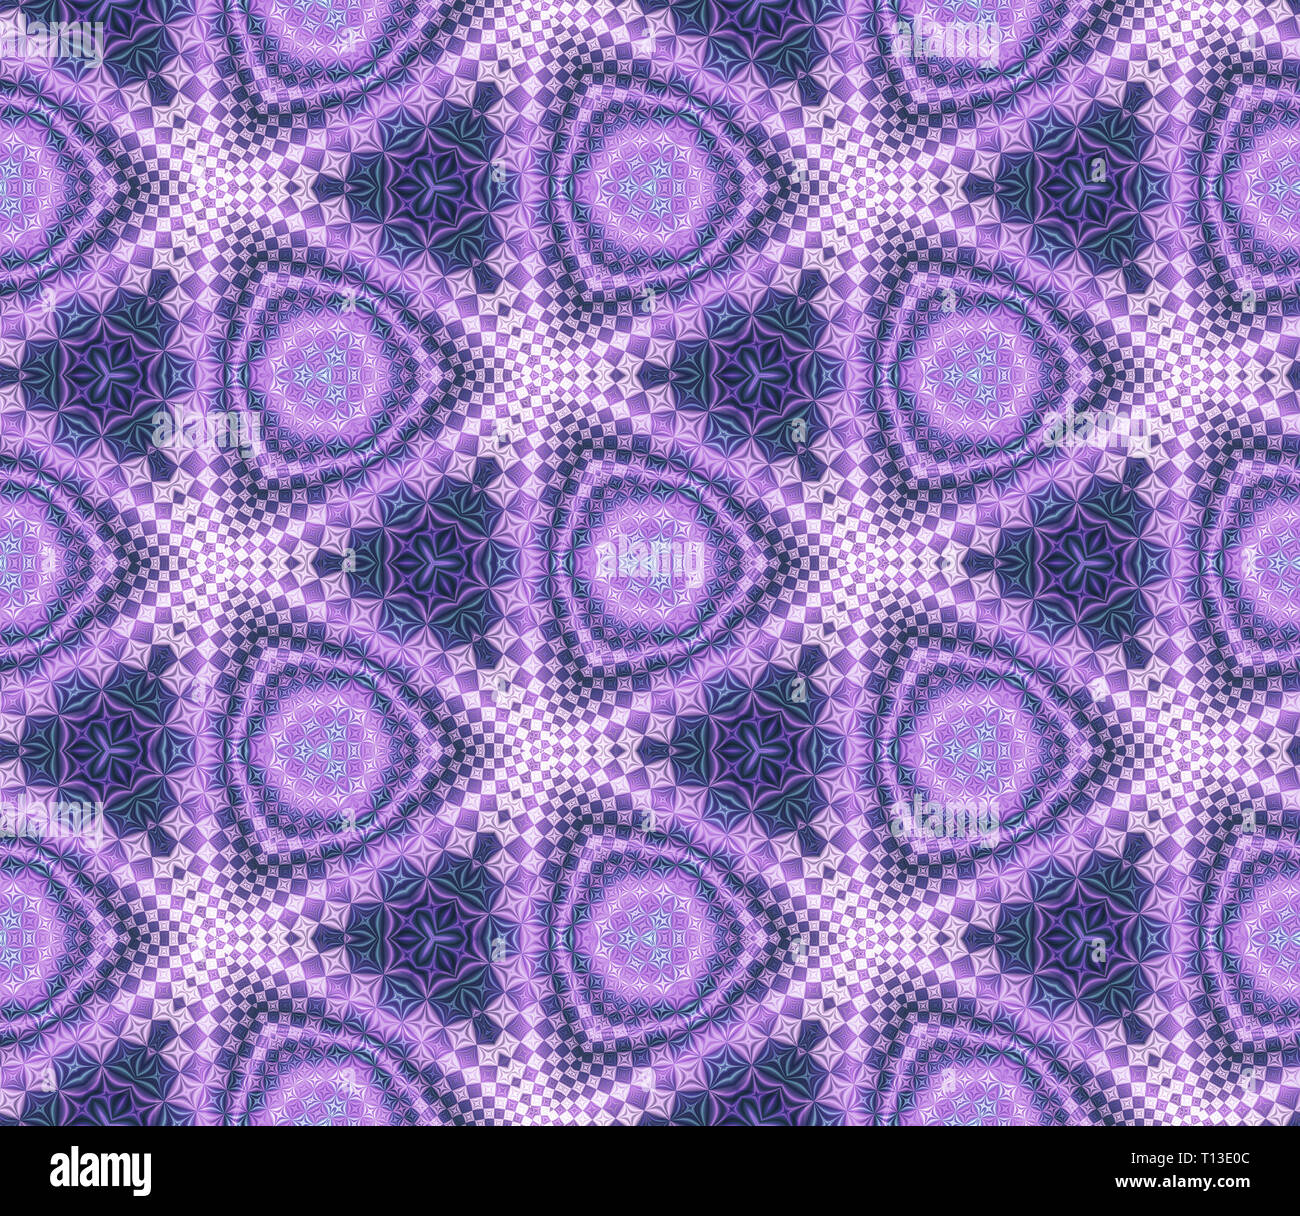 Mancuerna De Círculo tejido púrpura 